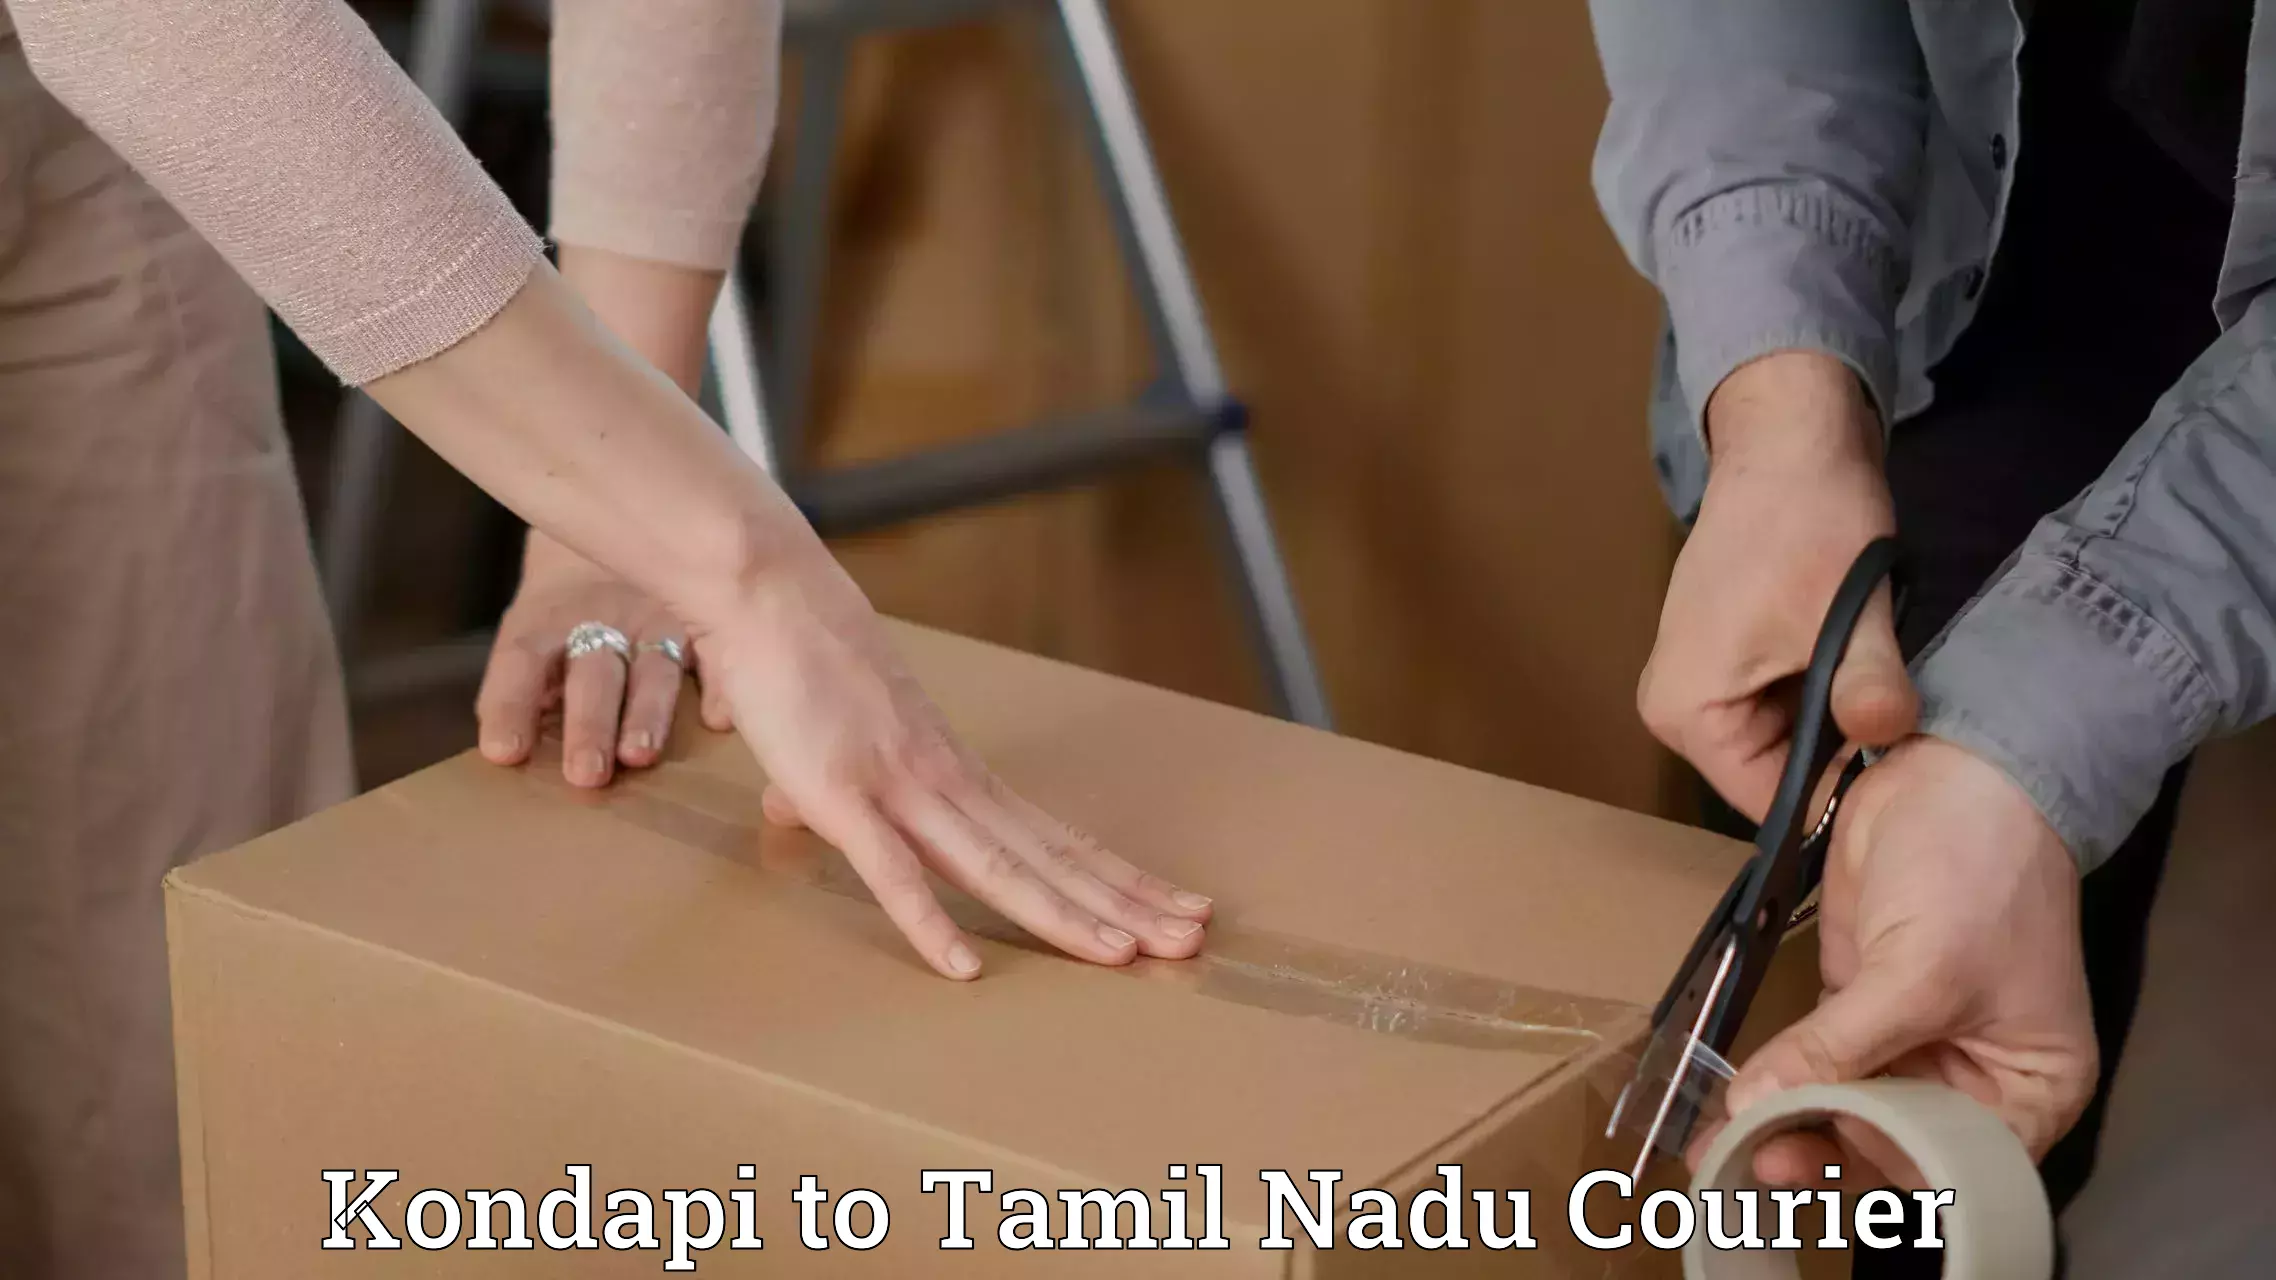 Delivery service partnership in Kondapi to Tamil Nadu